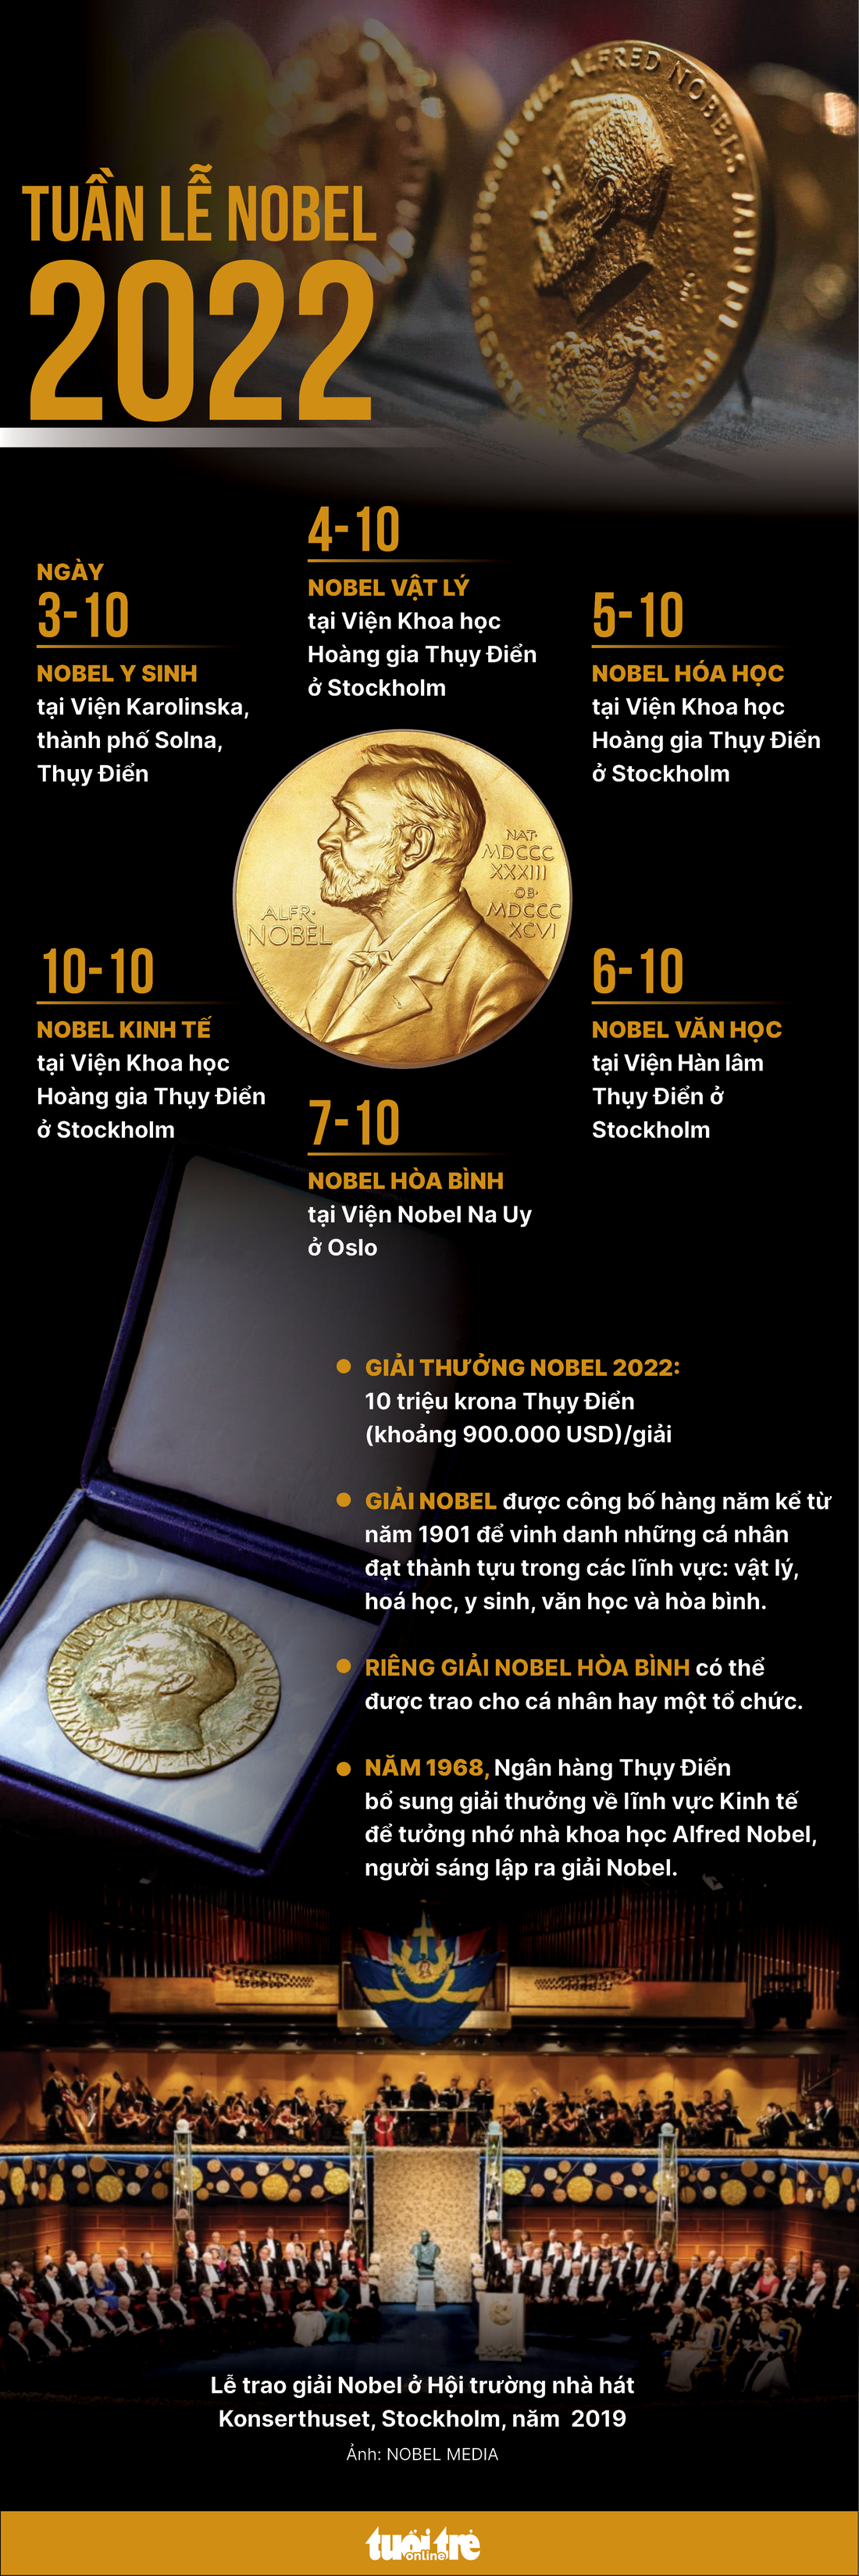 Khai mạc Tuần lễ Nobel 2022 - Ảnh 1.